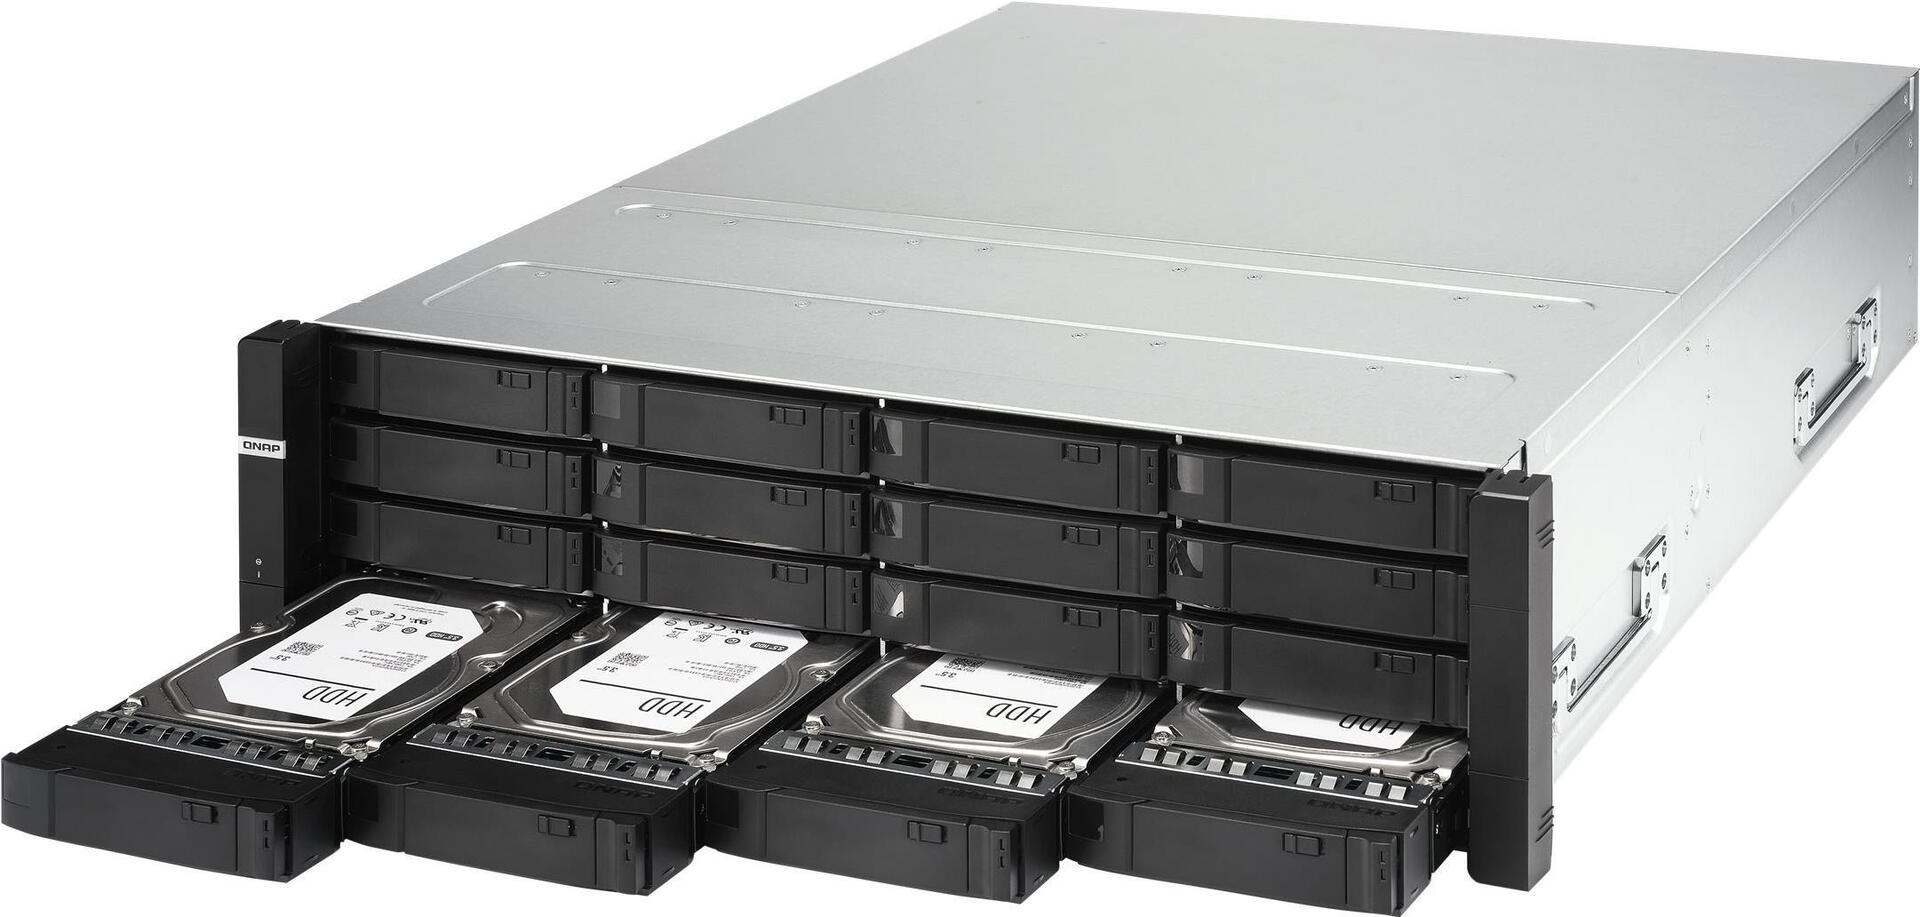 QNAP ES1686DC - NAS-Server - 16 Schächte - Rack - einbaufähig - SAS 12Gb/s - RAID 0, 1, 5, 6, 10, JB